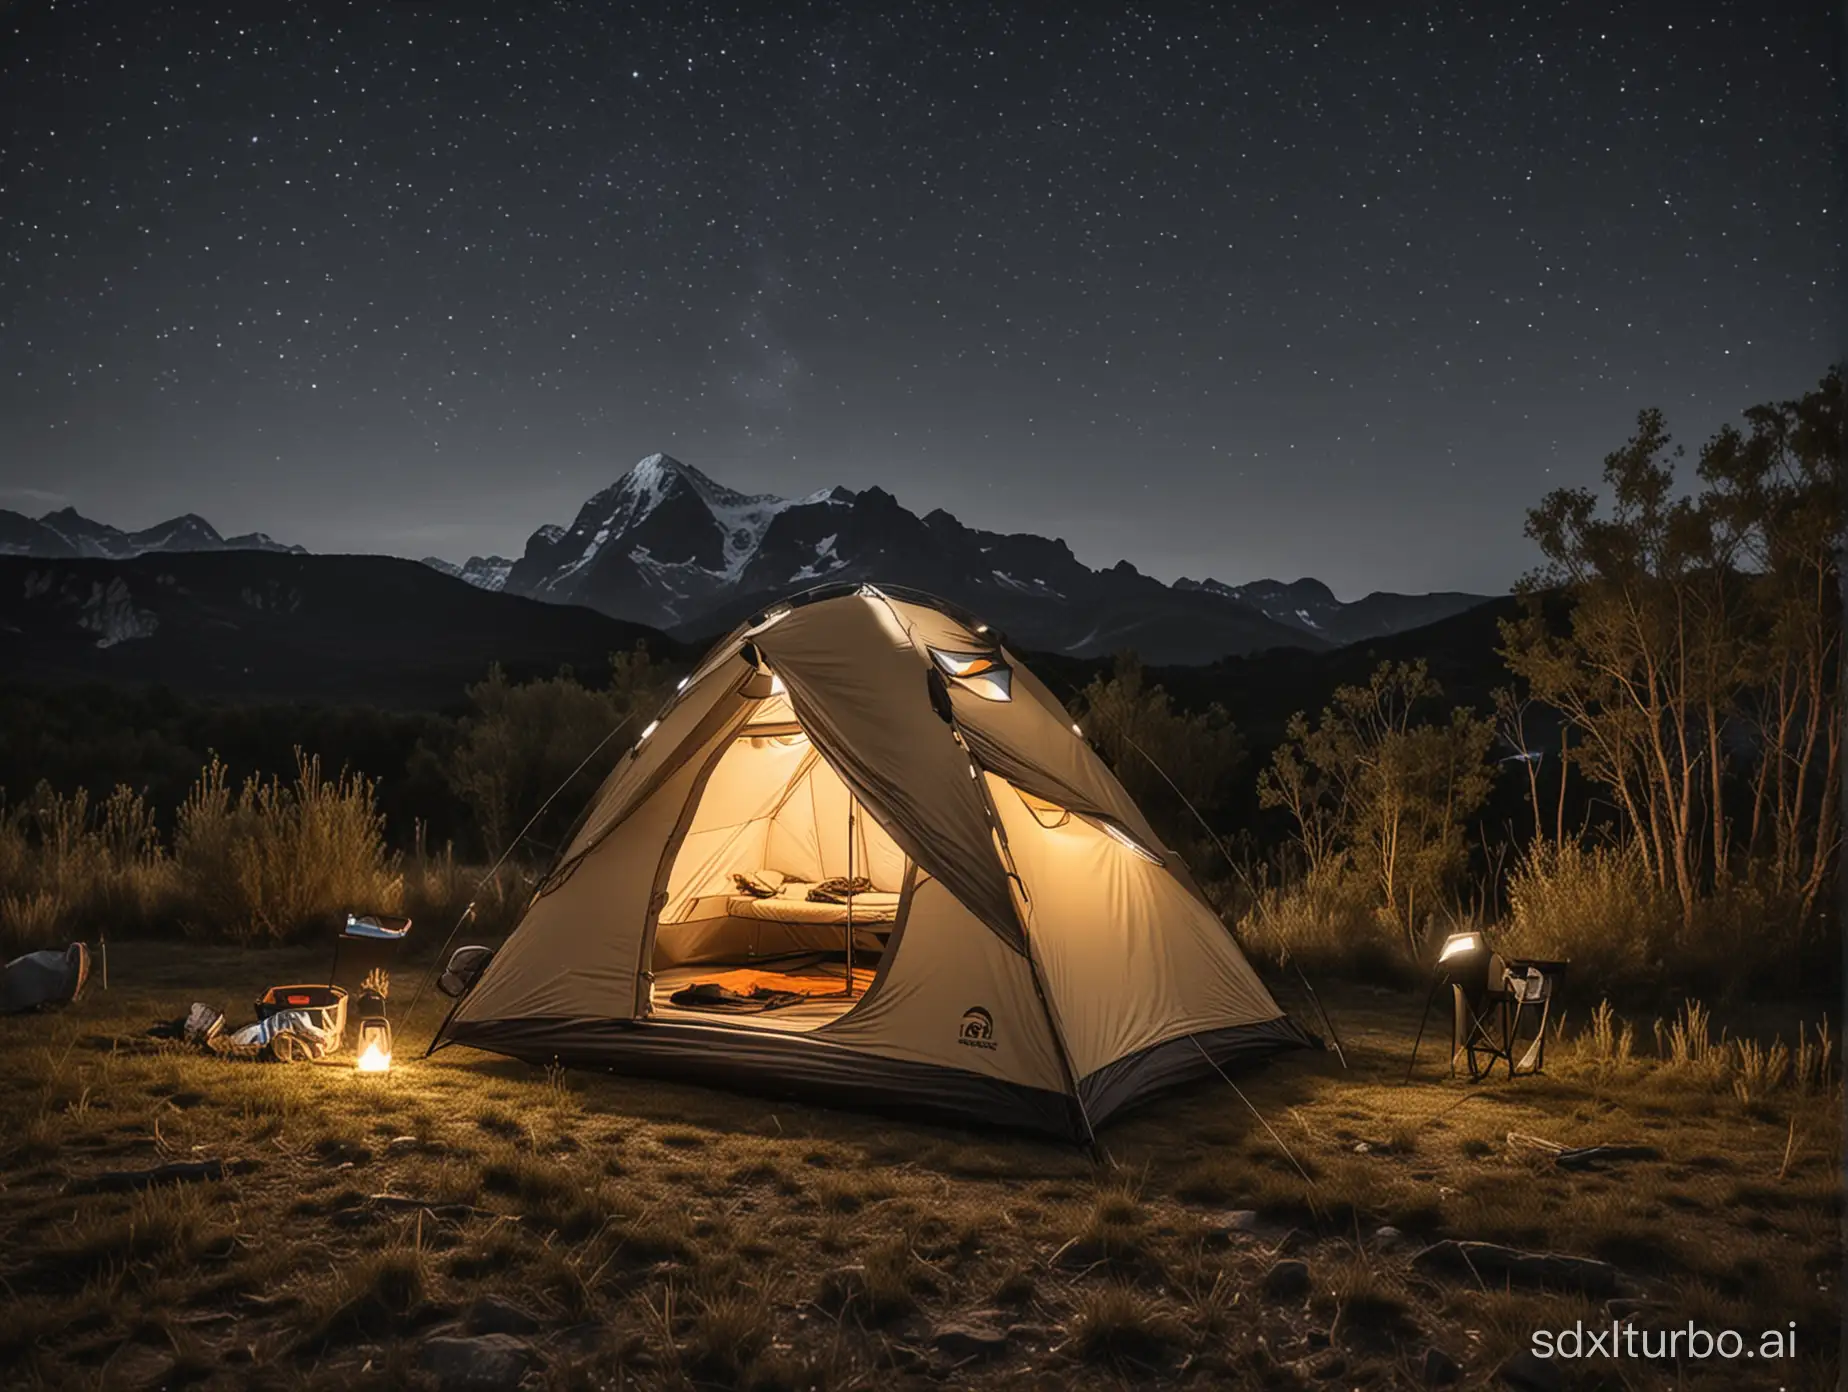 une tente de camping transportable très surélevée avec un éclairage led à l'intérieur, sans fenêtres pour une personne avec une seule ouverture
